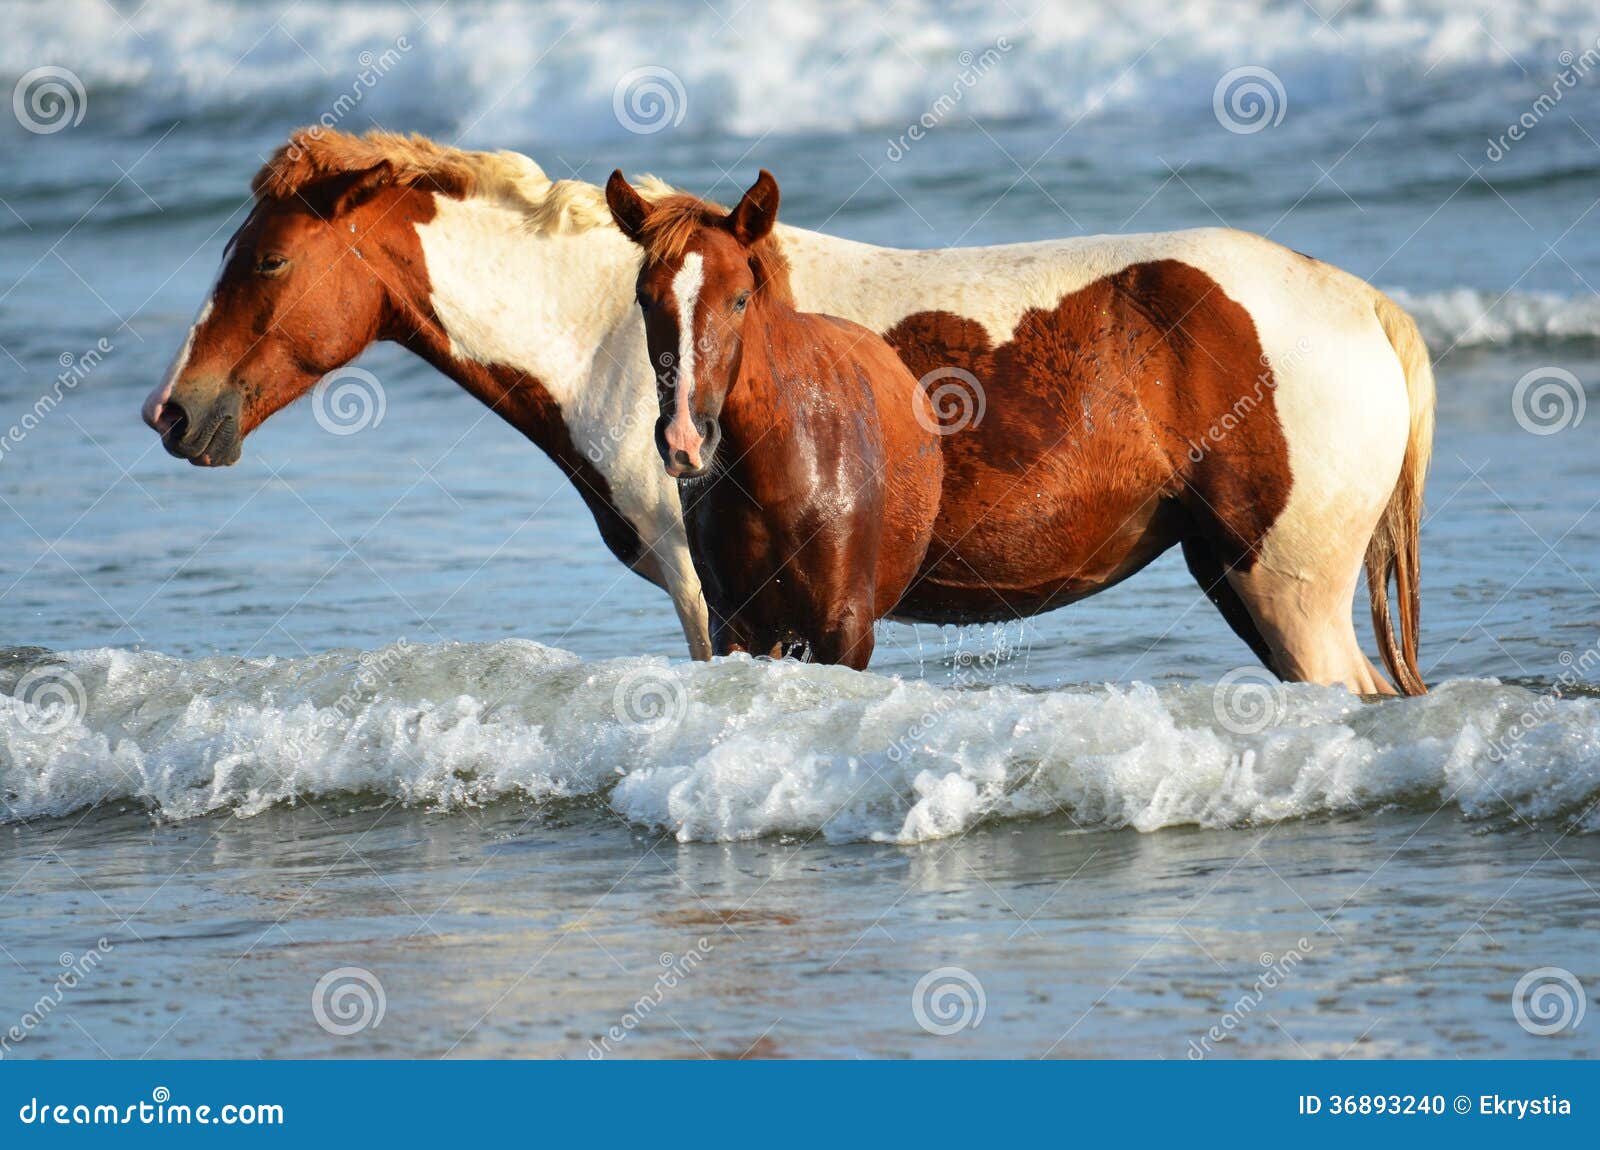 horses at the beach, playa el espino